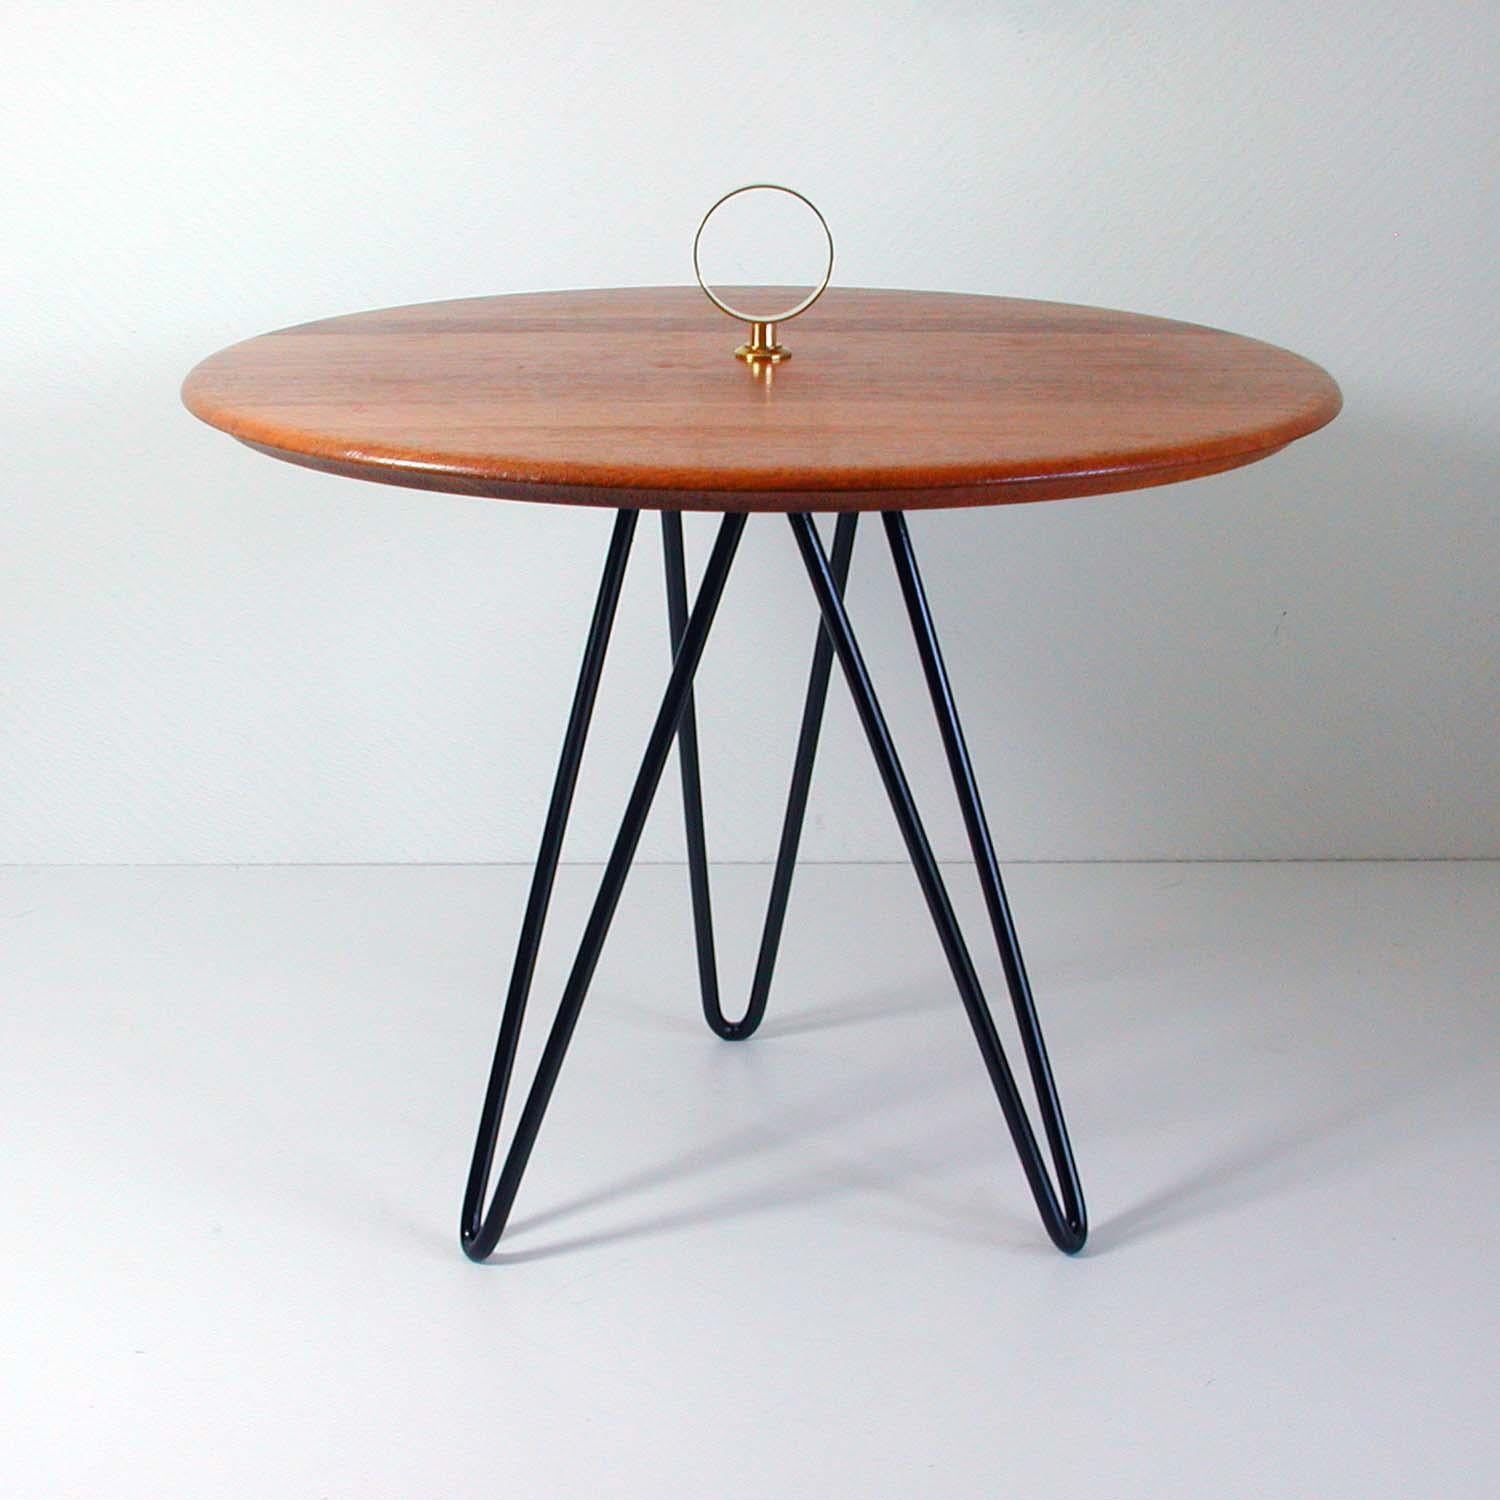 Cette table d'appoint ronde vintage en forme de trépied a été fabriquée au Danemark dans les années 1950-1960 par Digsmed. Elle est composée d'une base en fonte laquée noire, d'un plateau en teck et de détails en laiton.